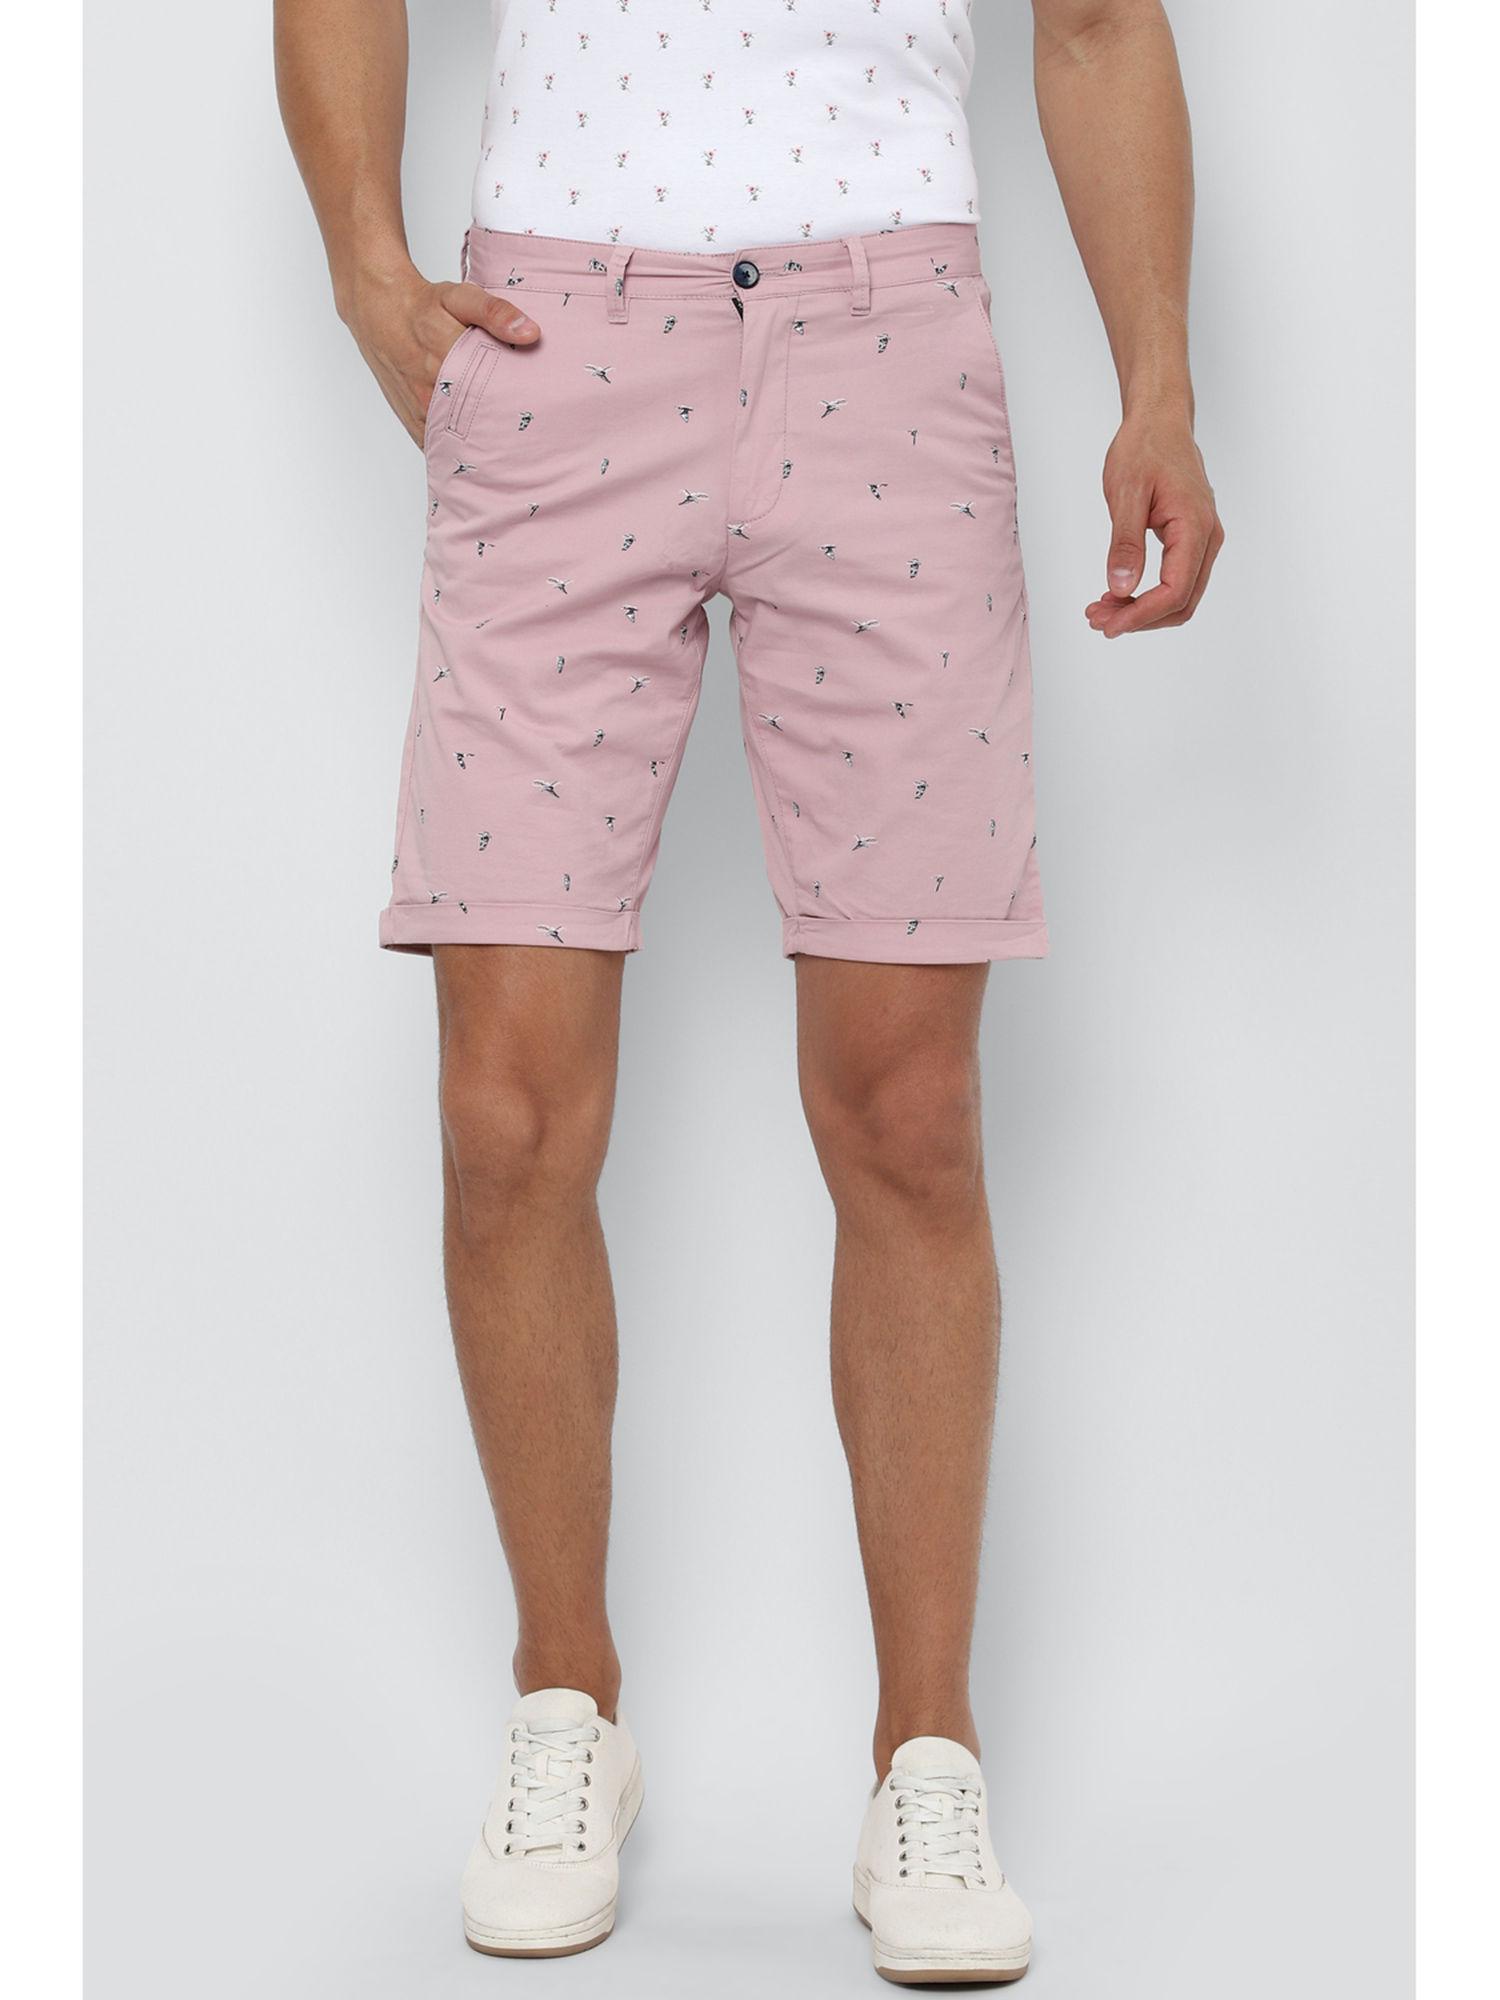 pink-shorts